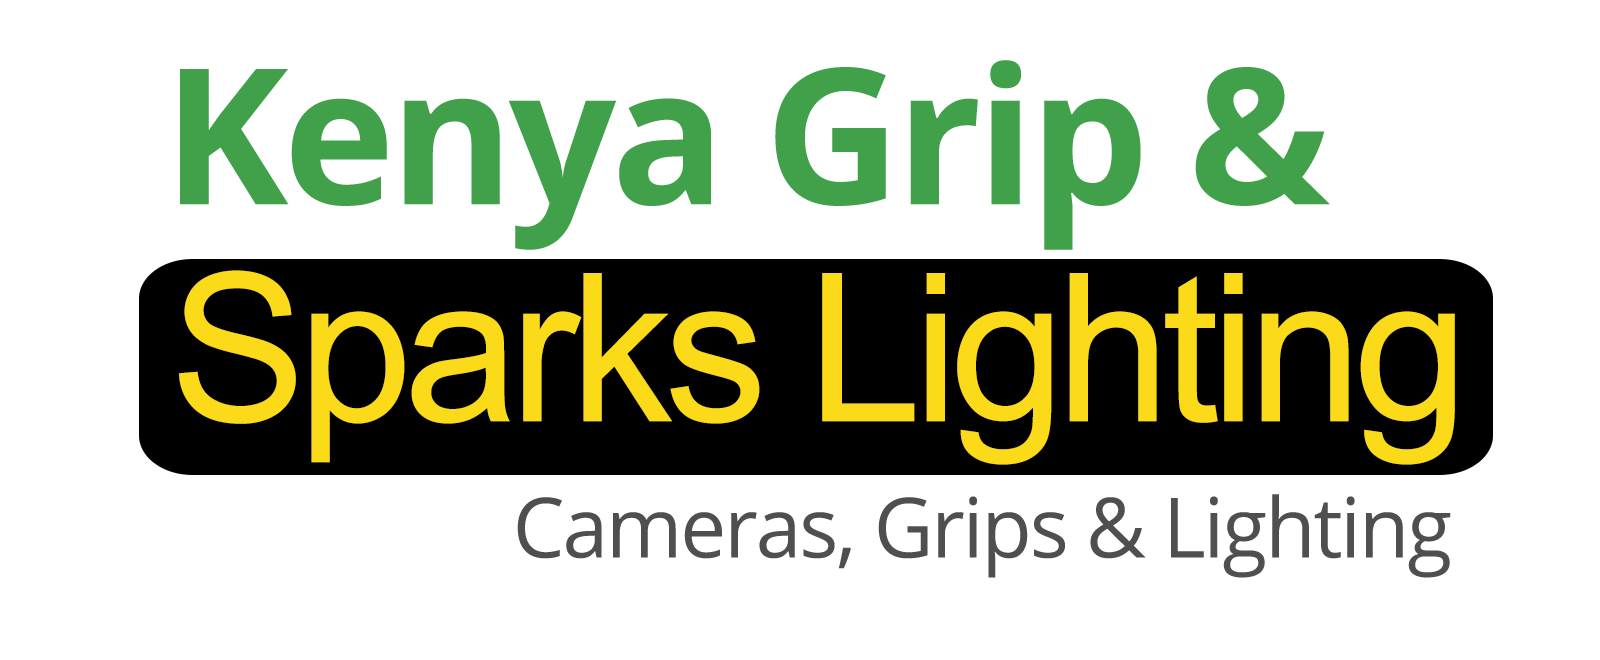 Kenya Grips & Sparks Lighting